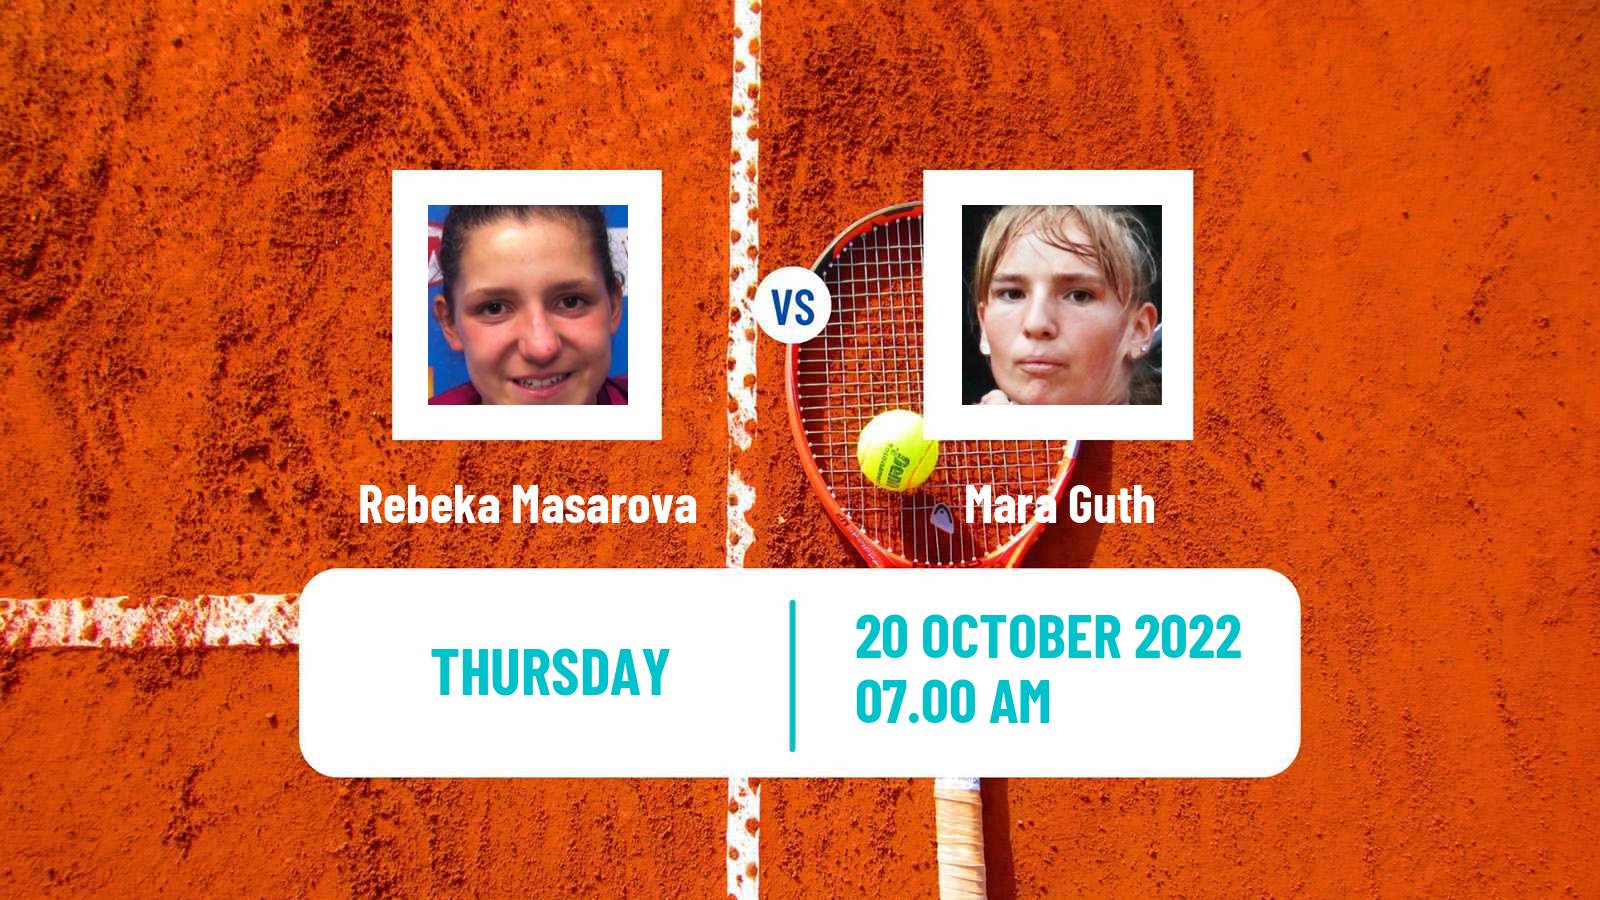 Tennis ITF Tournaments Rebeka Masarova - Mara Guth